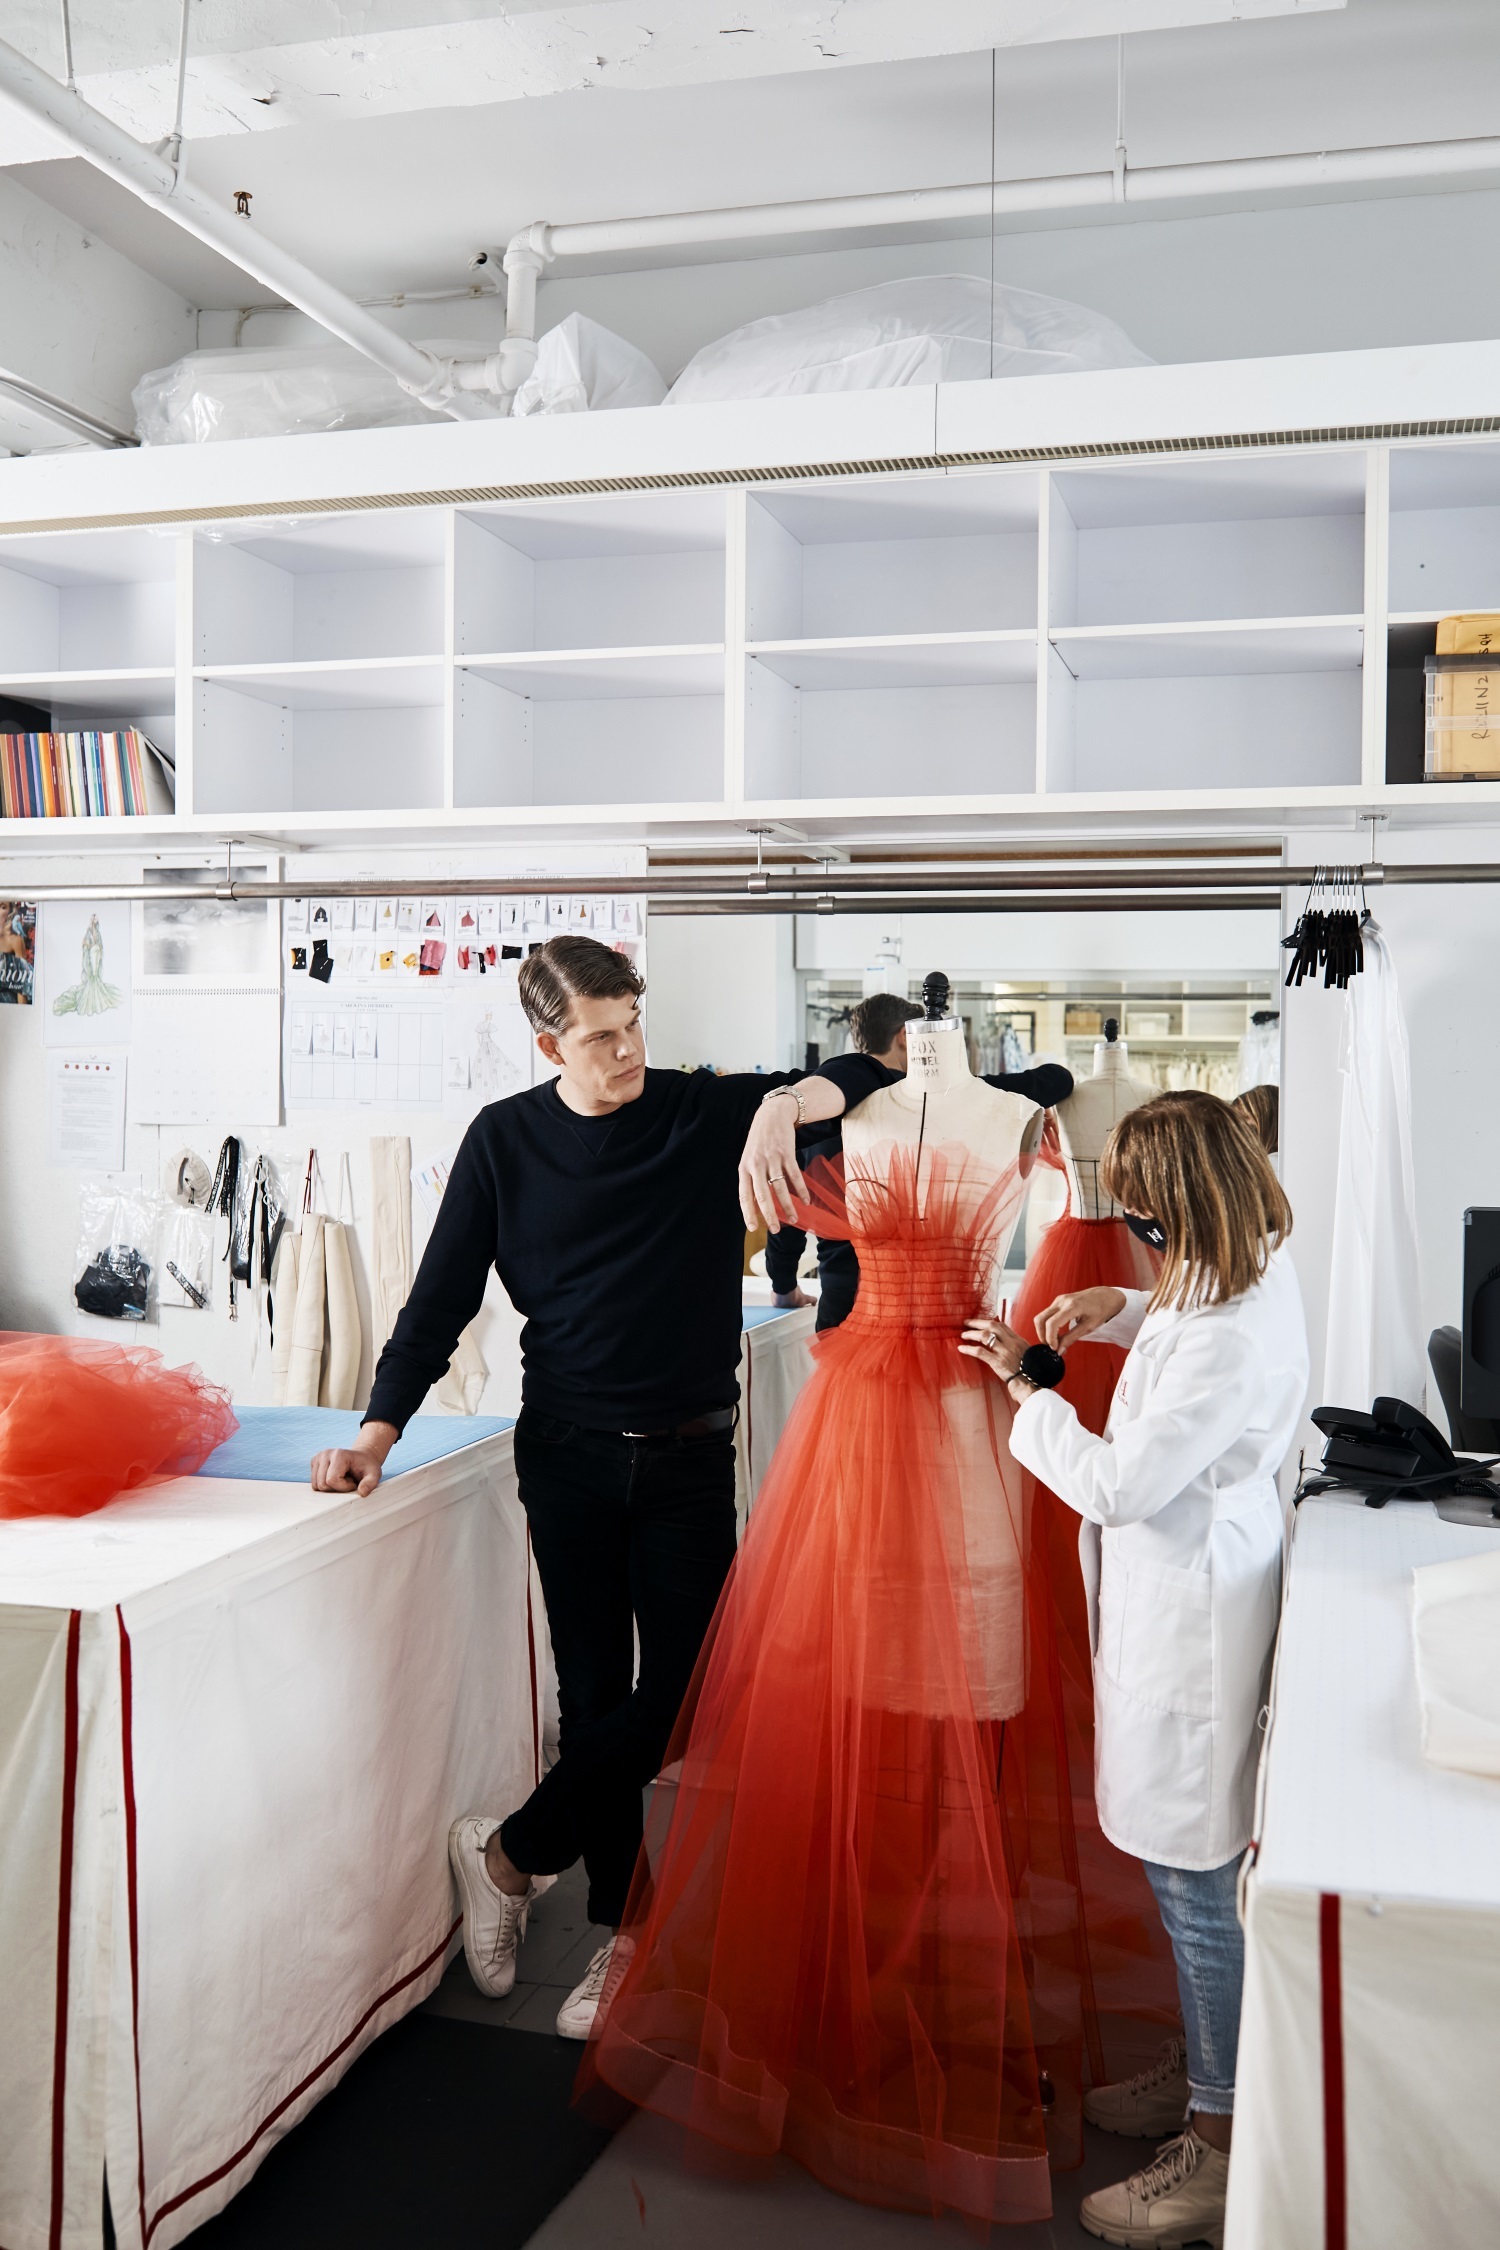 También conocido como Distrito de la Moda es donde está situado el Atelier de Carolina Herrera. Su tienda más icónica se encuentra en Madison Avenue.